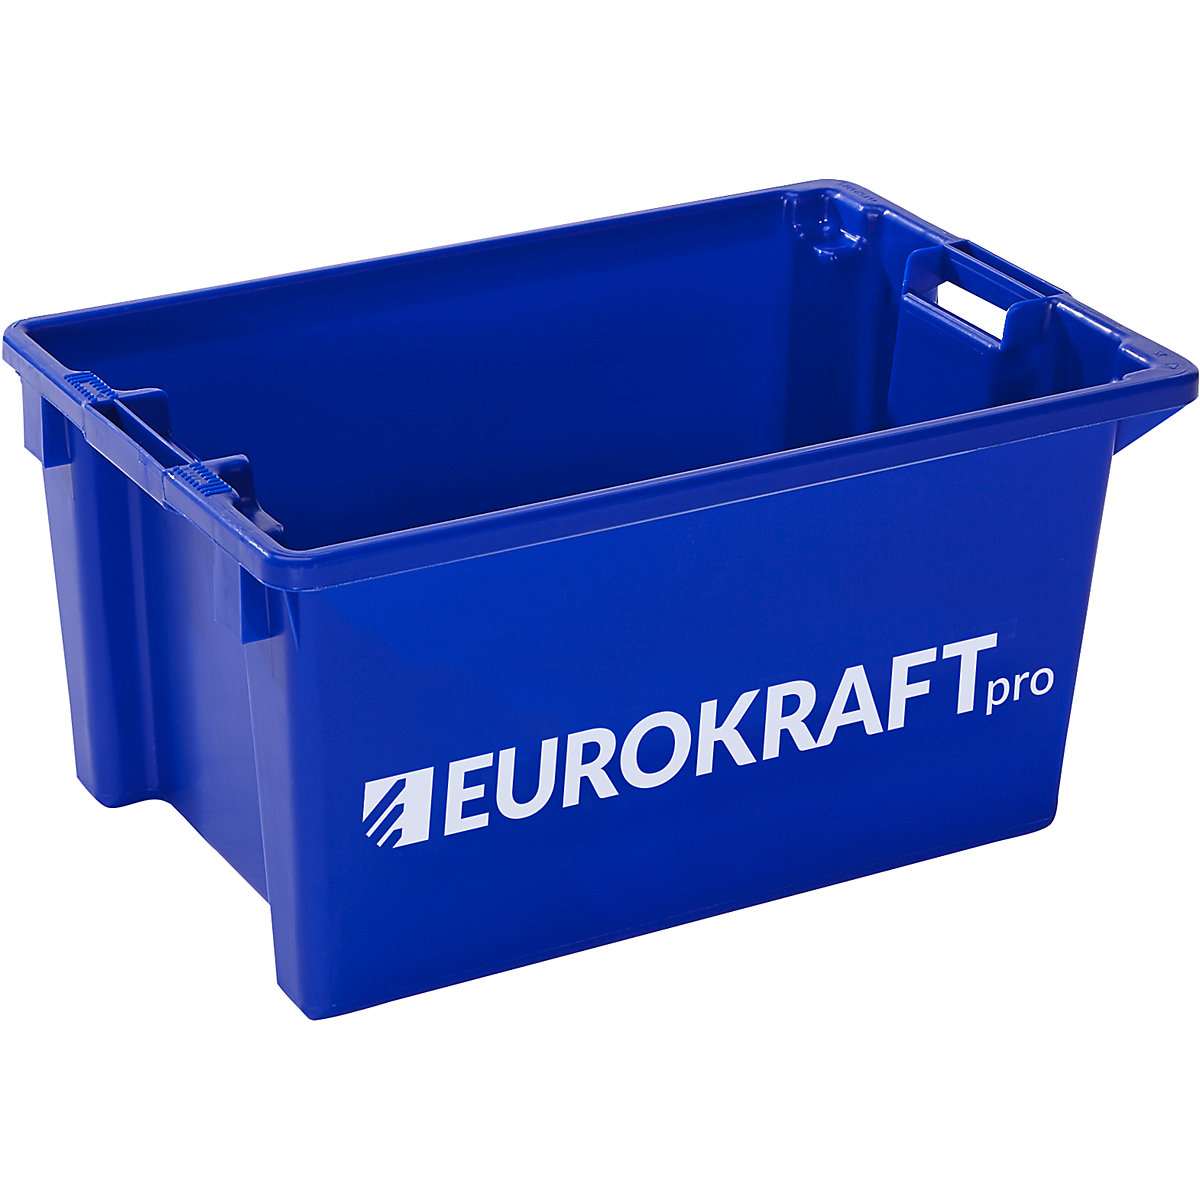 Recipiente empilhável giratório – eurokraft pro, volume 50 l, embalagem de 3 unid., azul